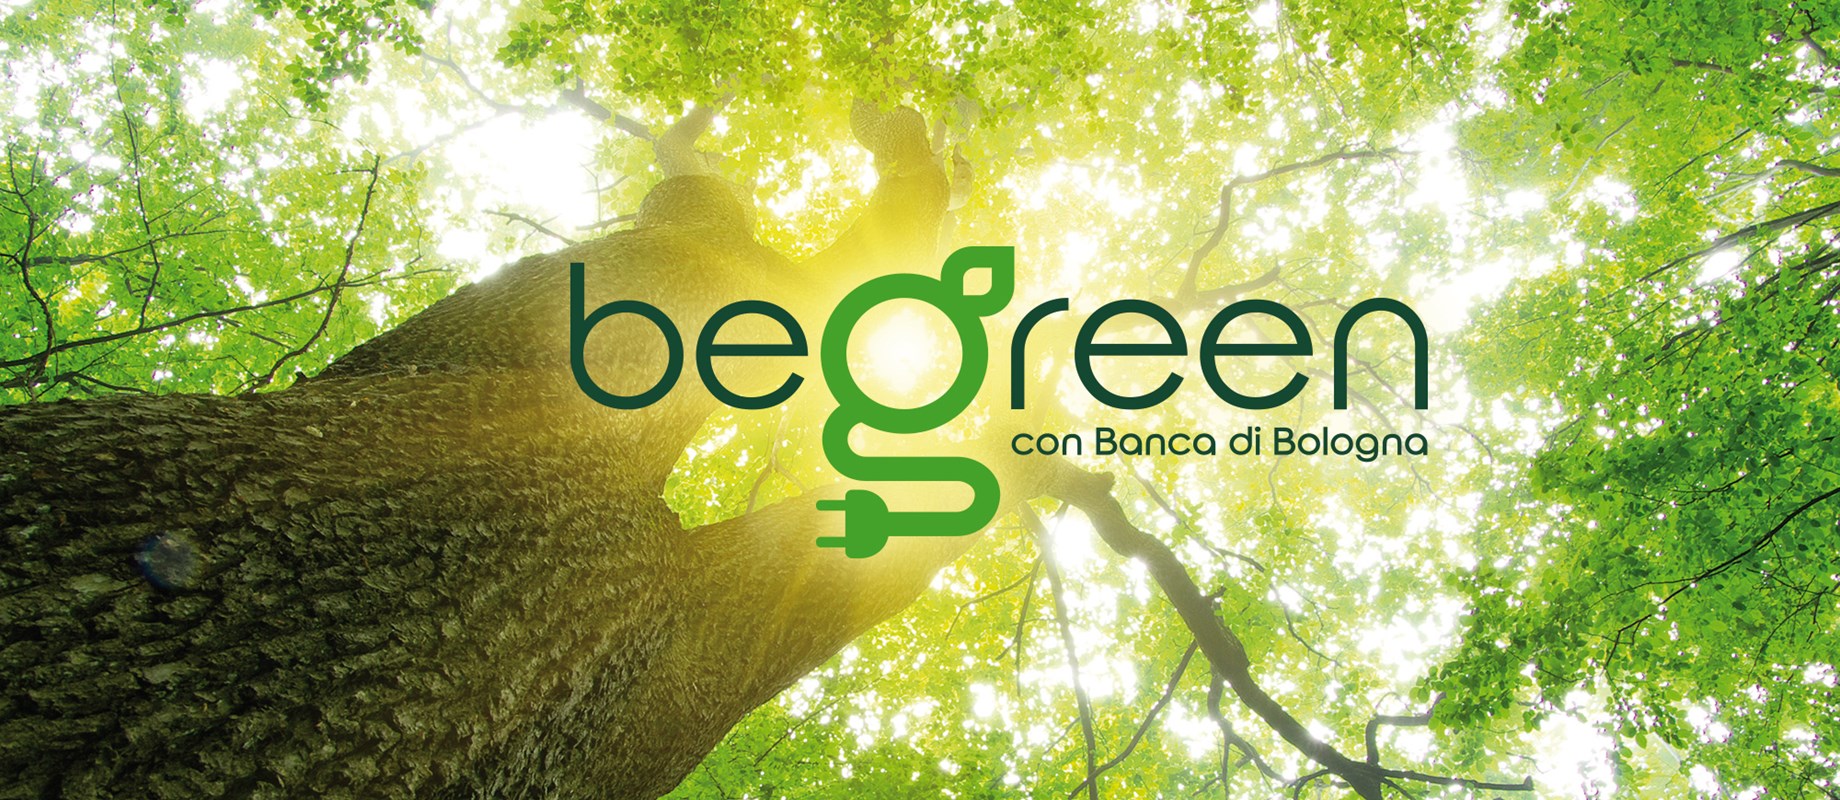  Scegli di vivere in modo sano e responsabile. Scopri le attività di Banca di Bologna per rendere l’ambiente migliore nella sezione begreen del sito www.bancadibologna.it 